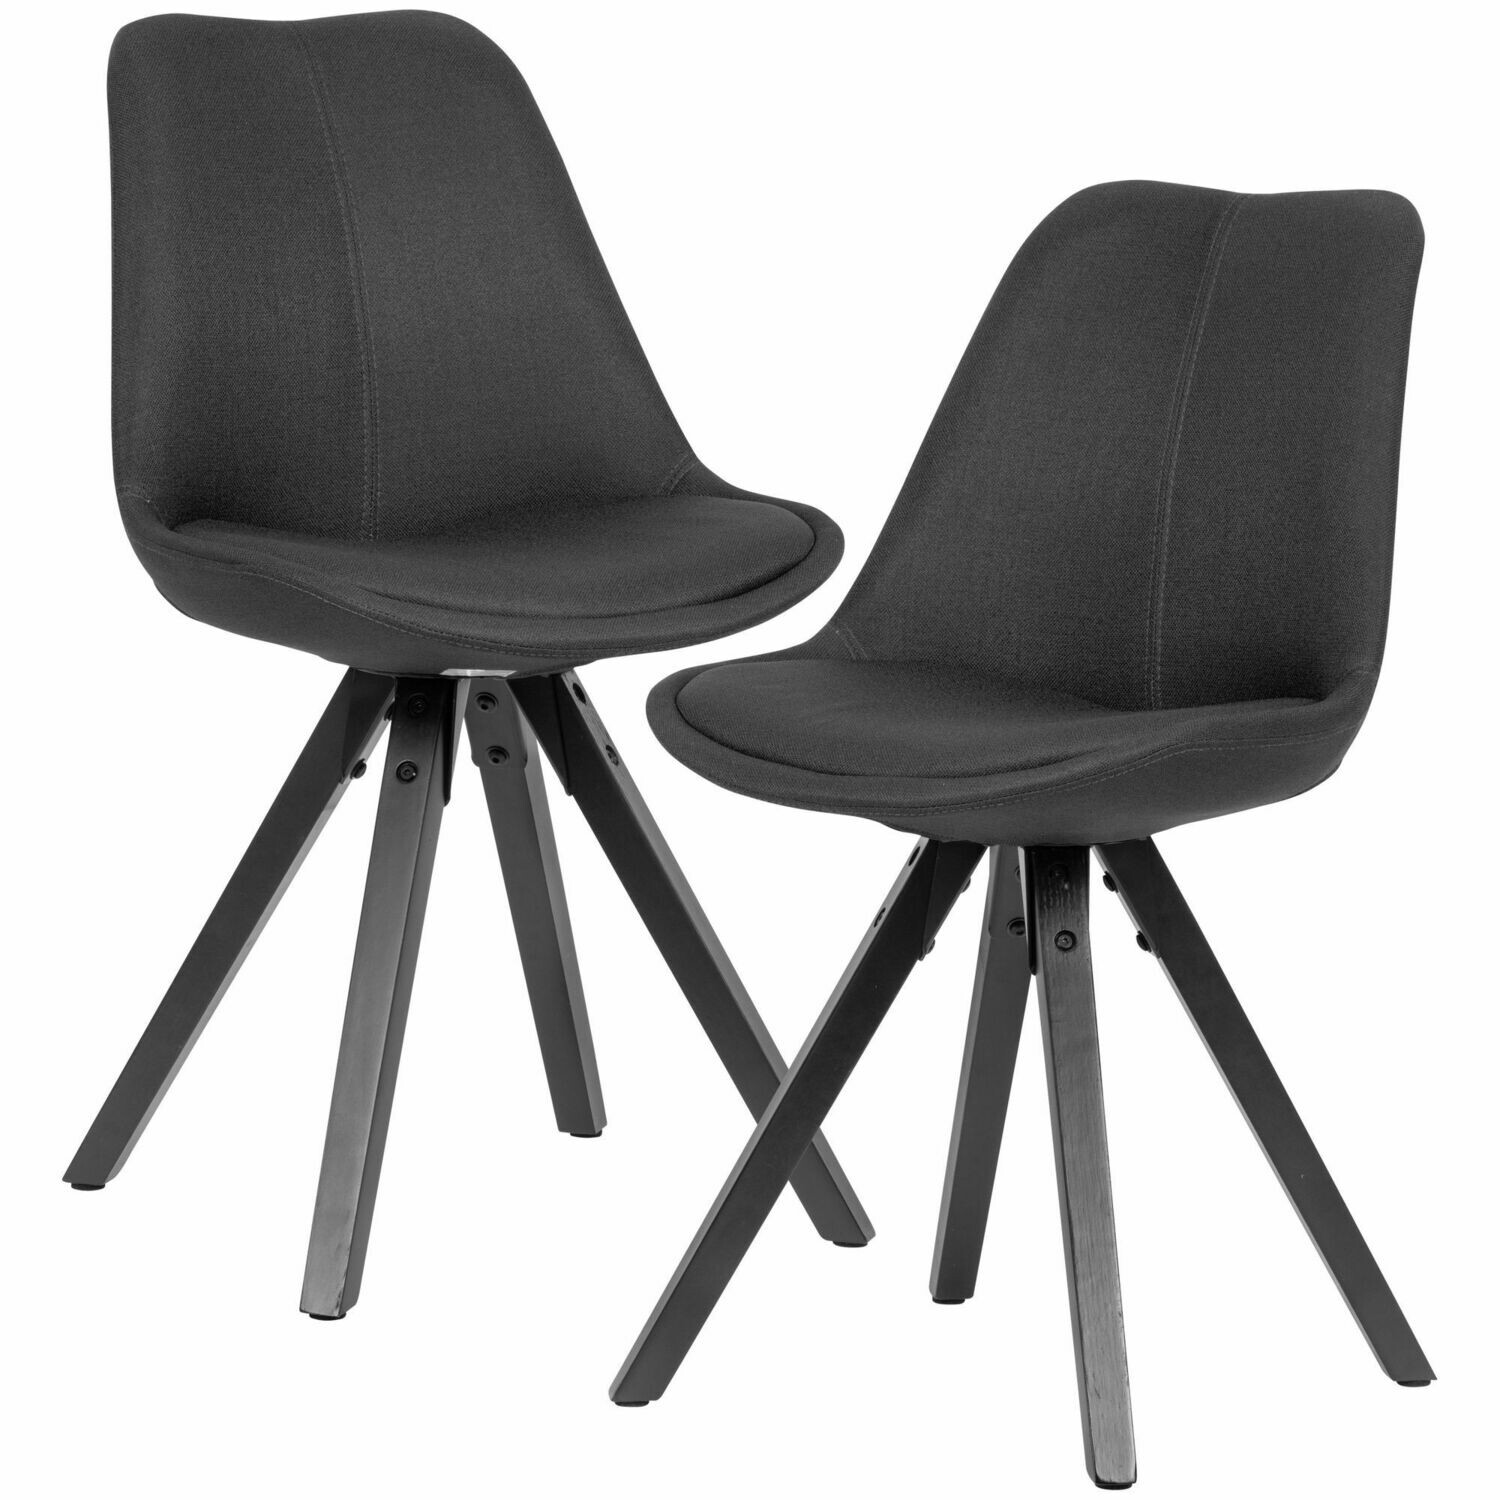 2er Set Esszimmerstuhl Anthrazit mit schwarzen Beinen Stuhl Skandinavisch | Polsterstuhl mit Stoff-Bezug | Design Küchenstuhl gepolstert